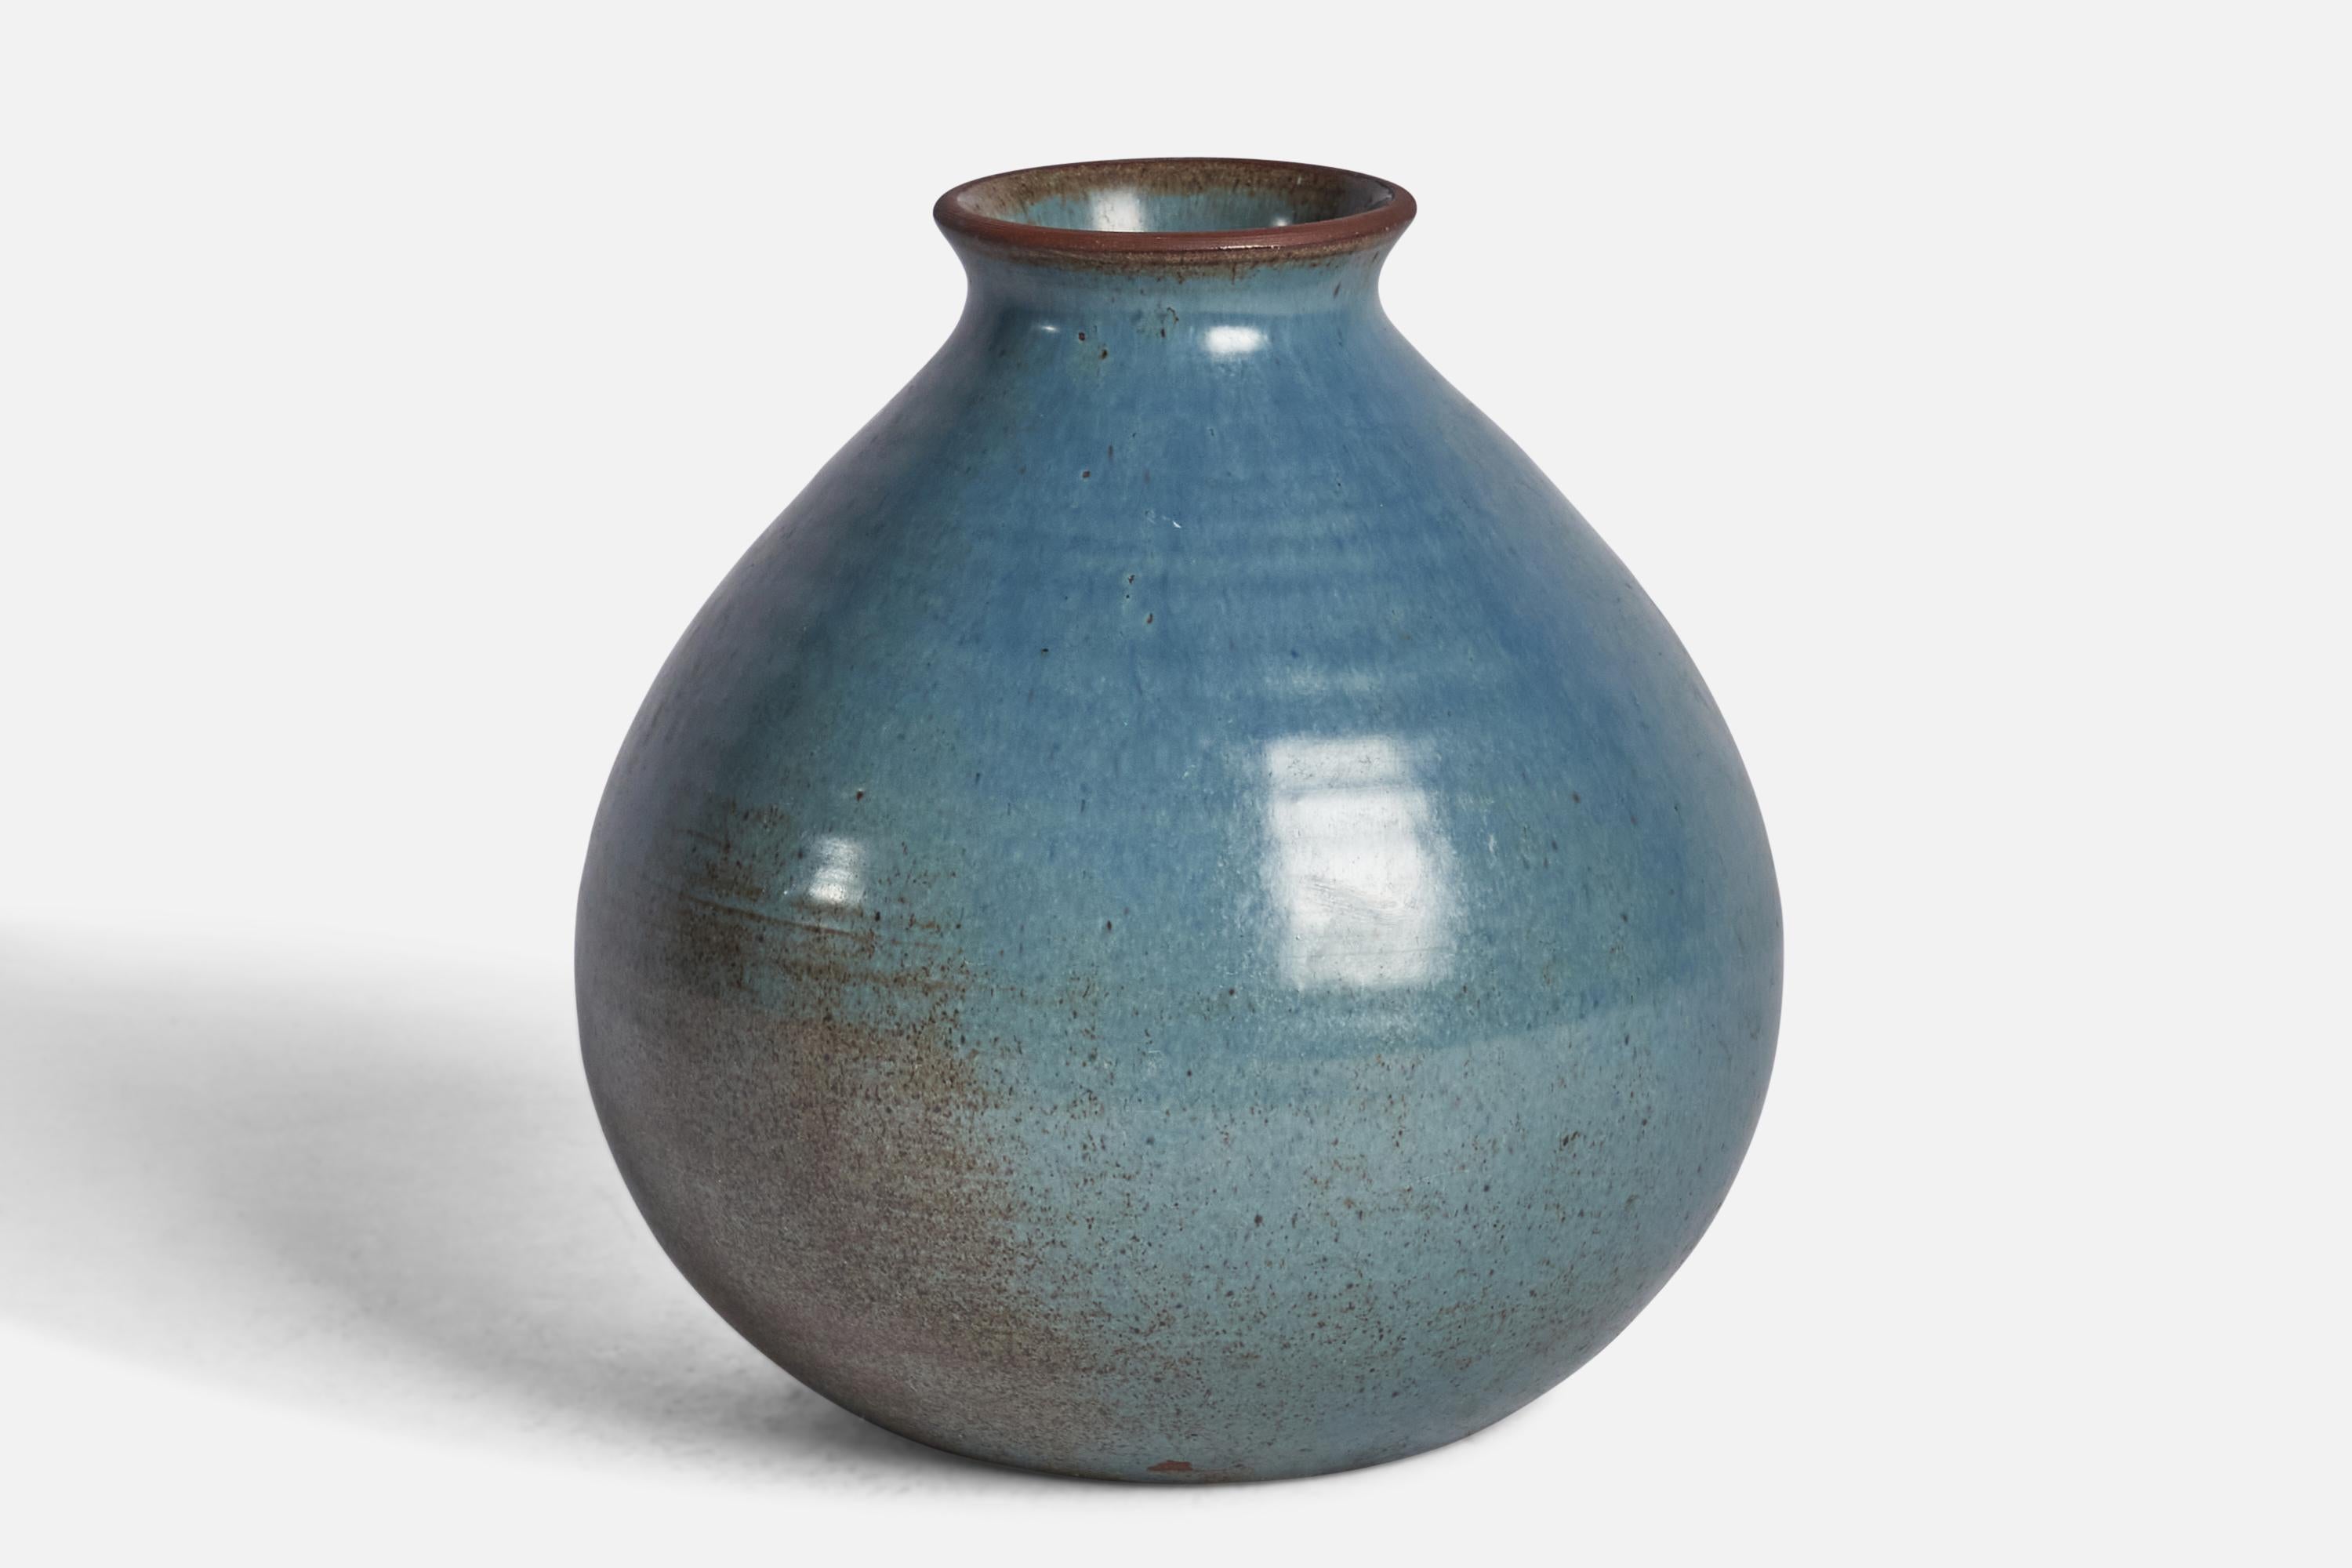 A blue-glazed ceramic vase designed and produced in Sweden, c. 1940s.